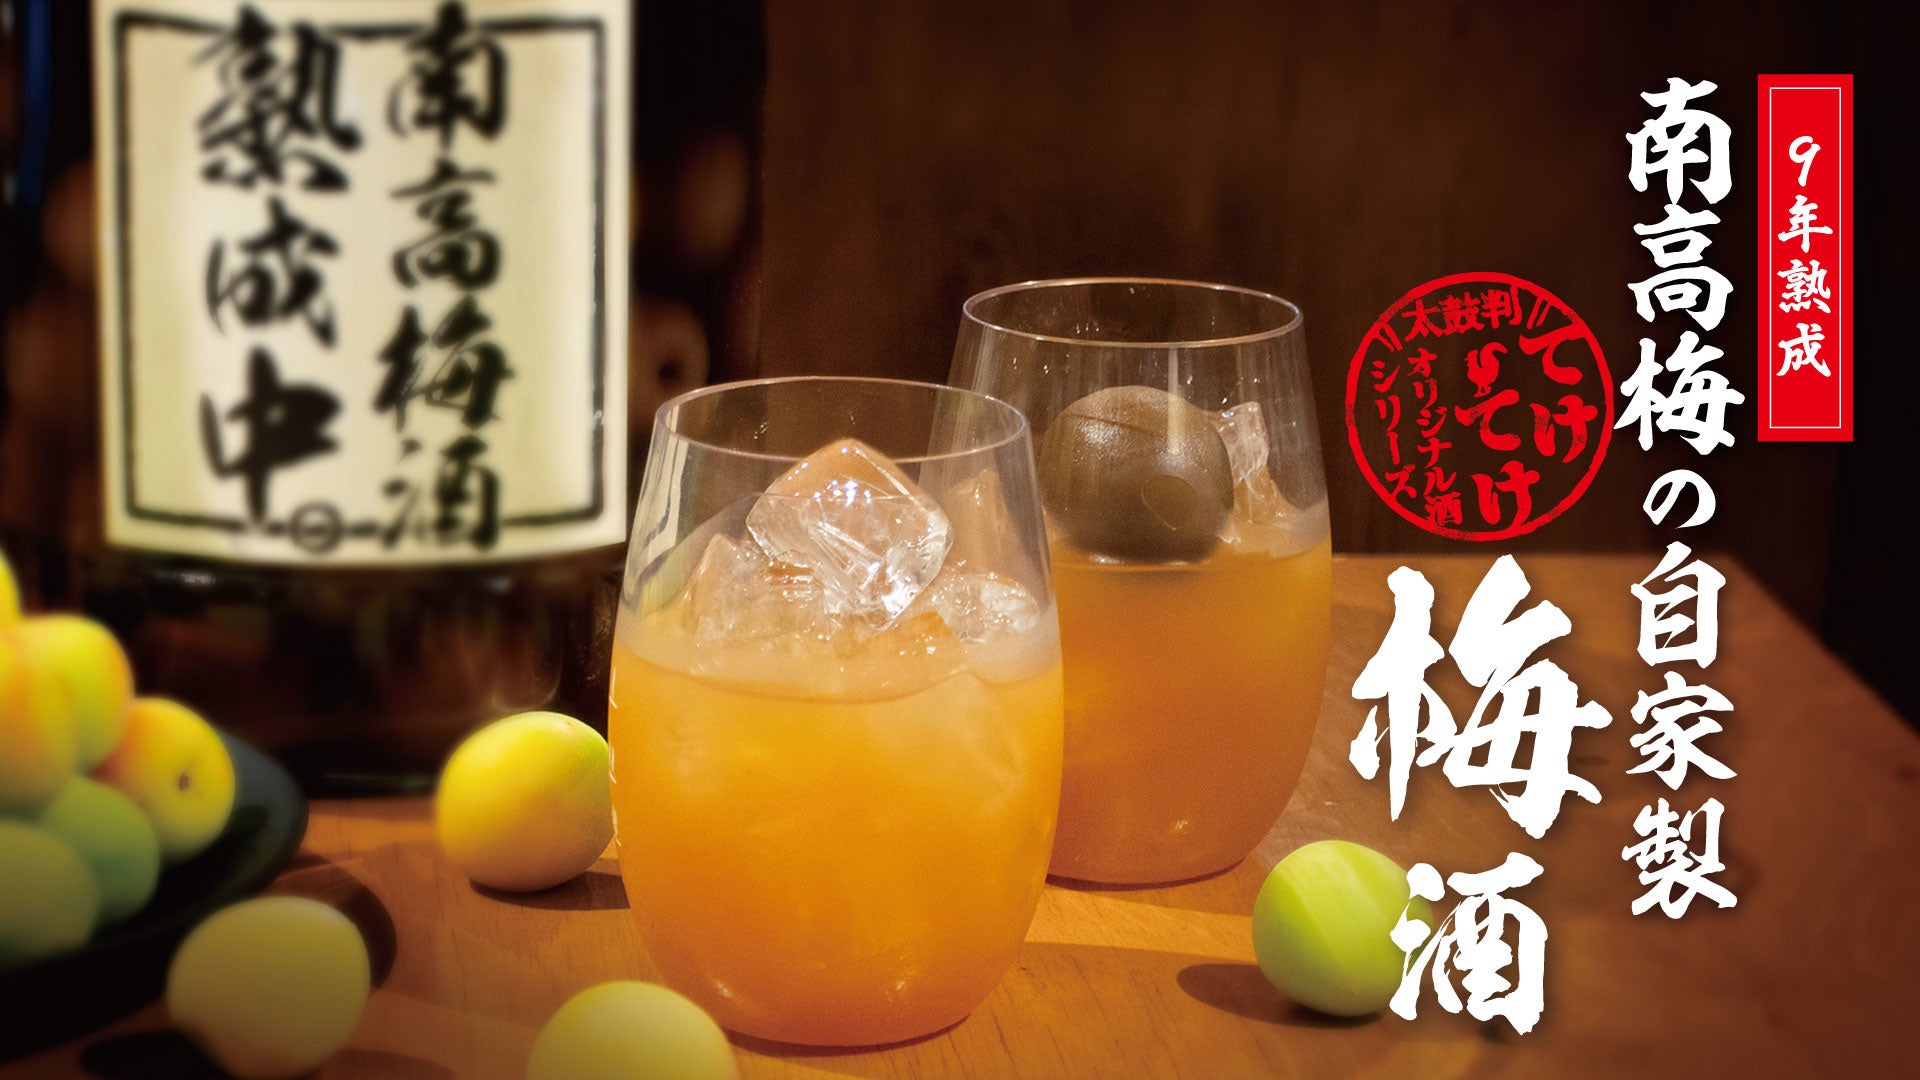 日本スタンドアップパドルボード協会（SUPA）の公式パワーフードに「飲むあんこ・theANko」が採用されました。